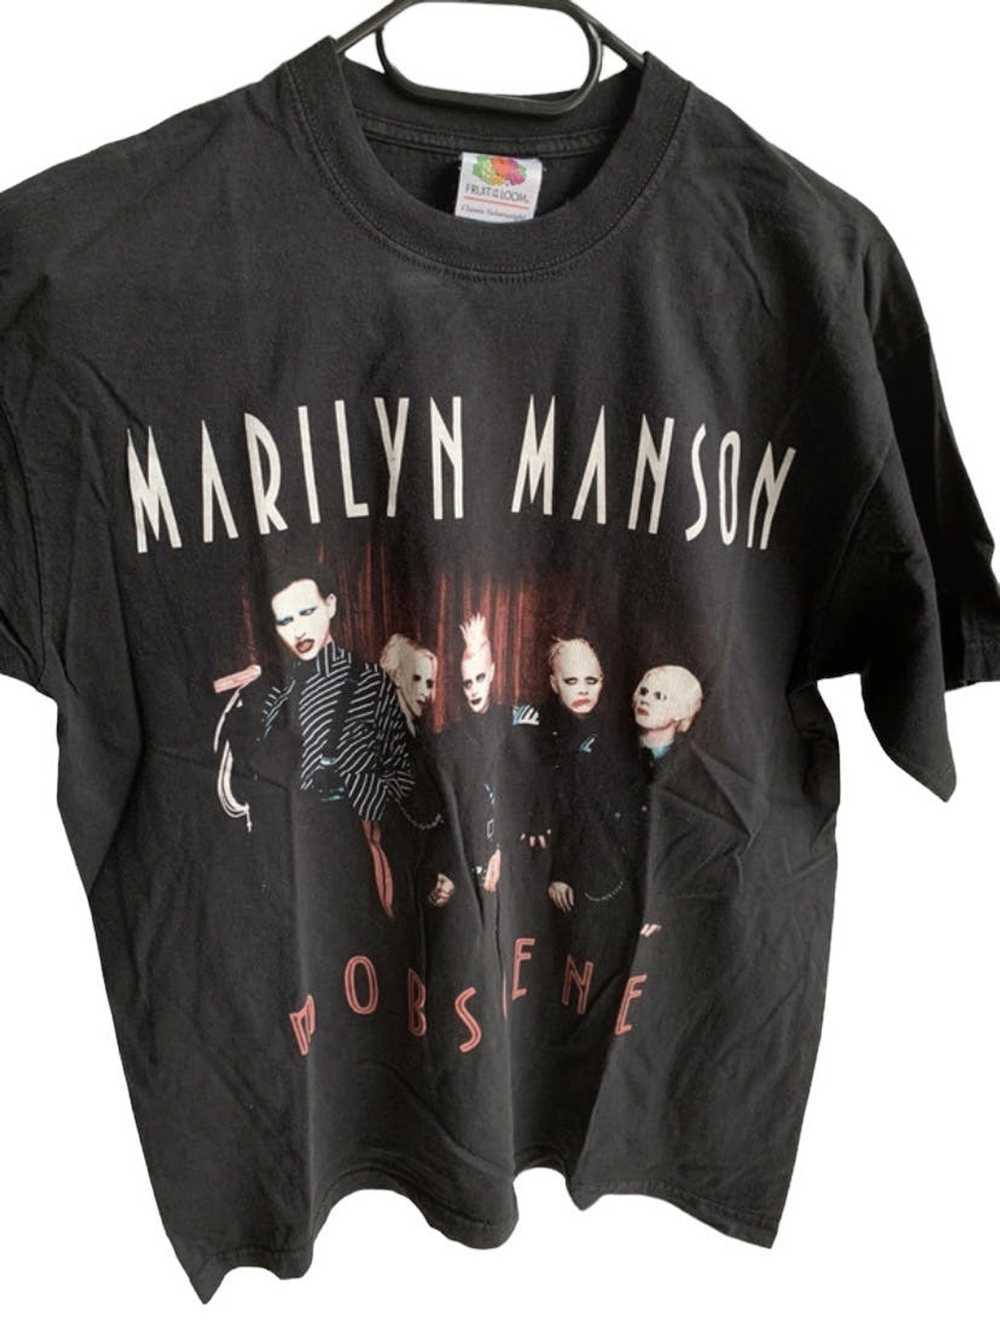 【L】Marilyn Manson tシャツ ビンテージTEE即購入可能です